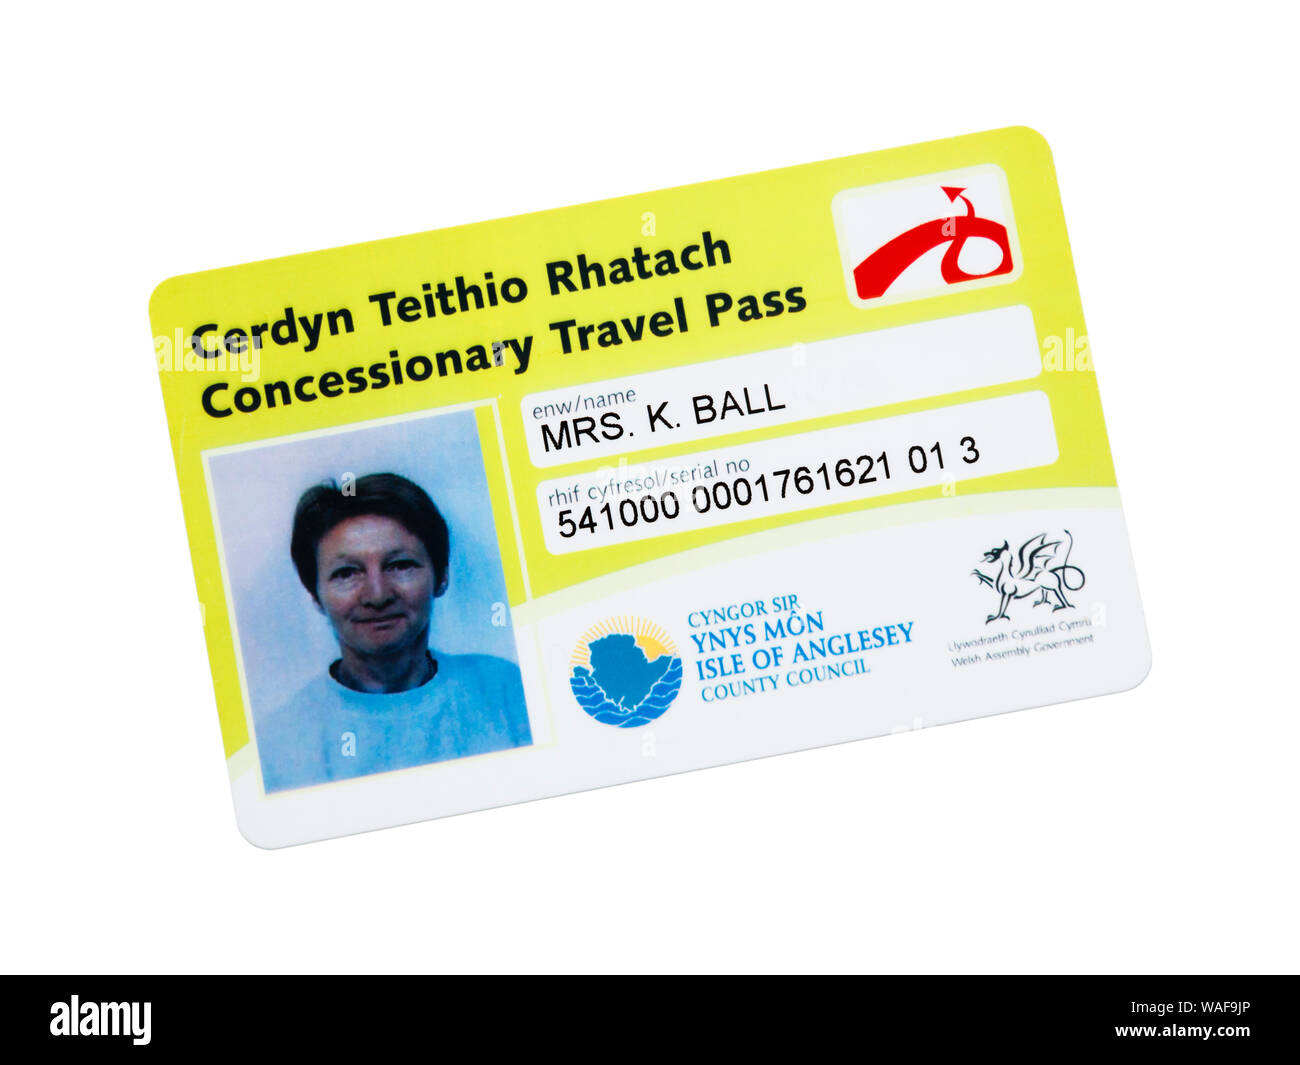 Welsh senior persona dell'autobus passano concessionari travel card con foto da autorità locali per viaggiare gratuitamente sugli autobus in Galles. Anglesey Wales UK Gran Bretagna Foto Stock